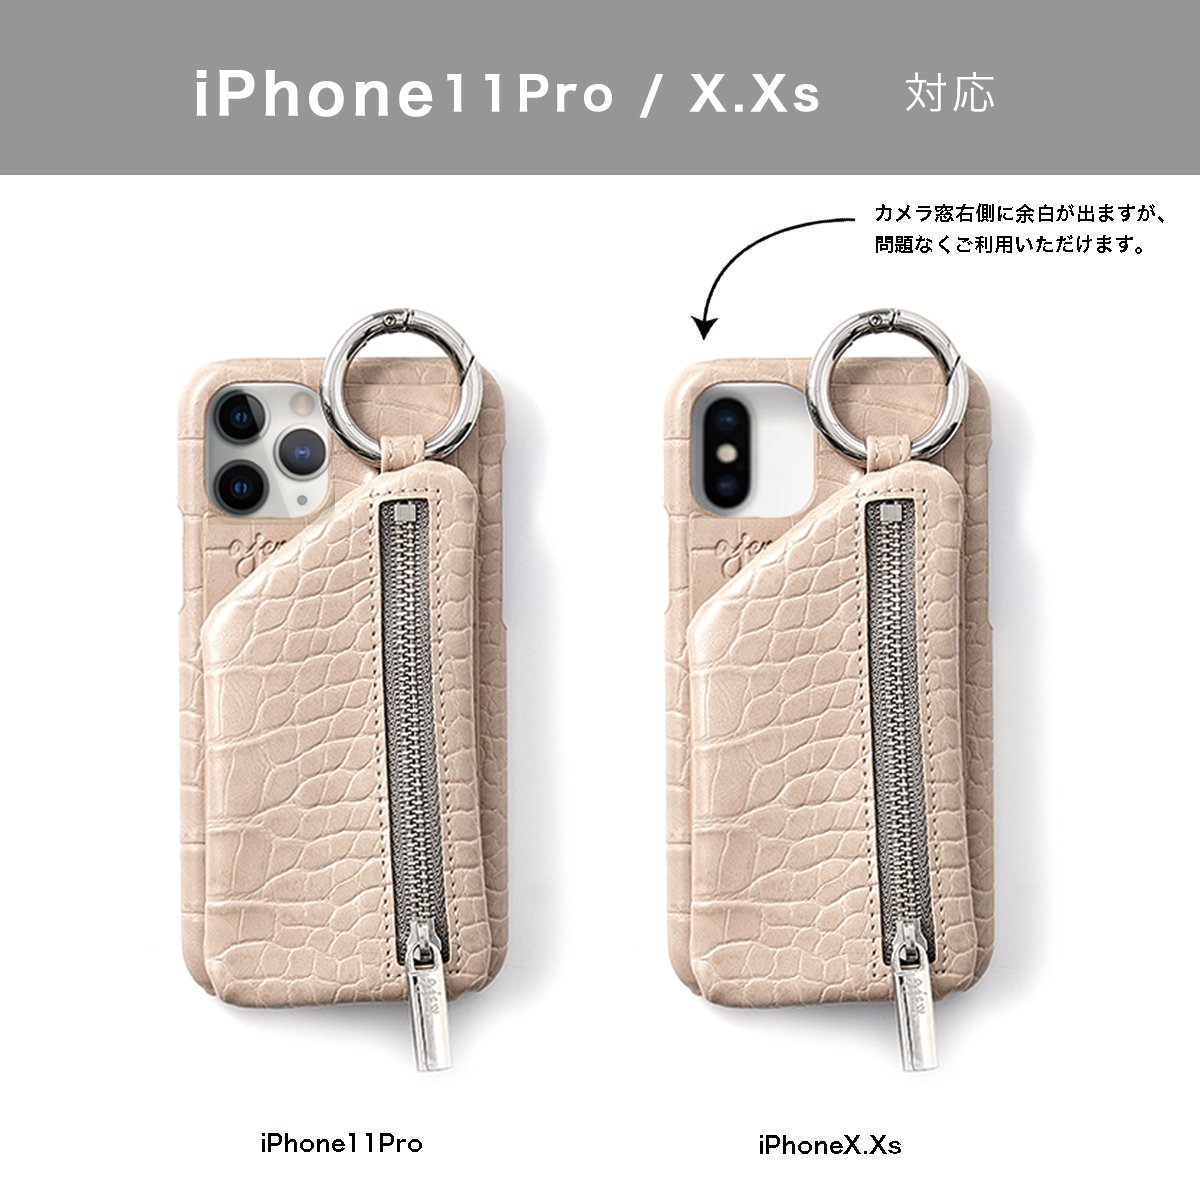 【ひも無しクロコ】 iPhoneX.Xs.11Pro共通対応 / beige (発送はご注文から3営業日以内です) - ajew